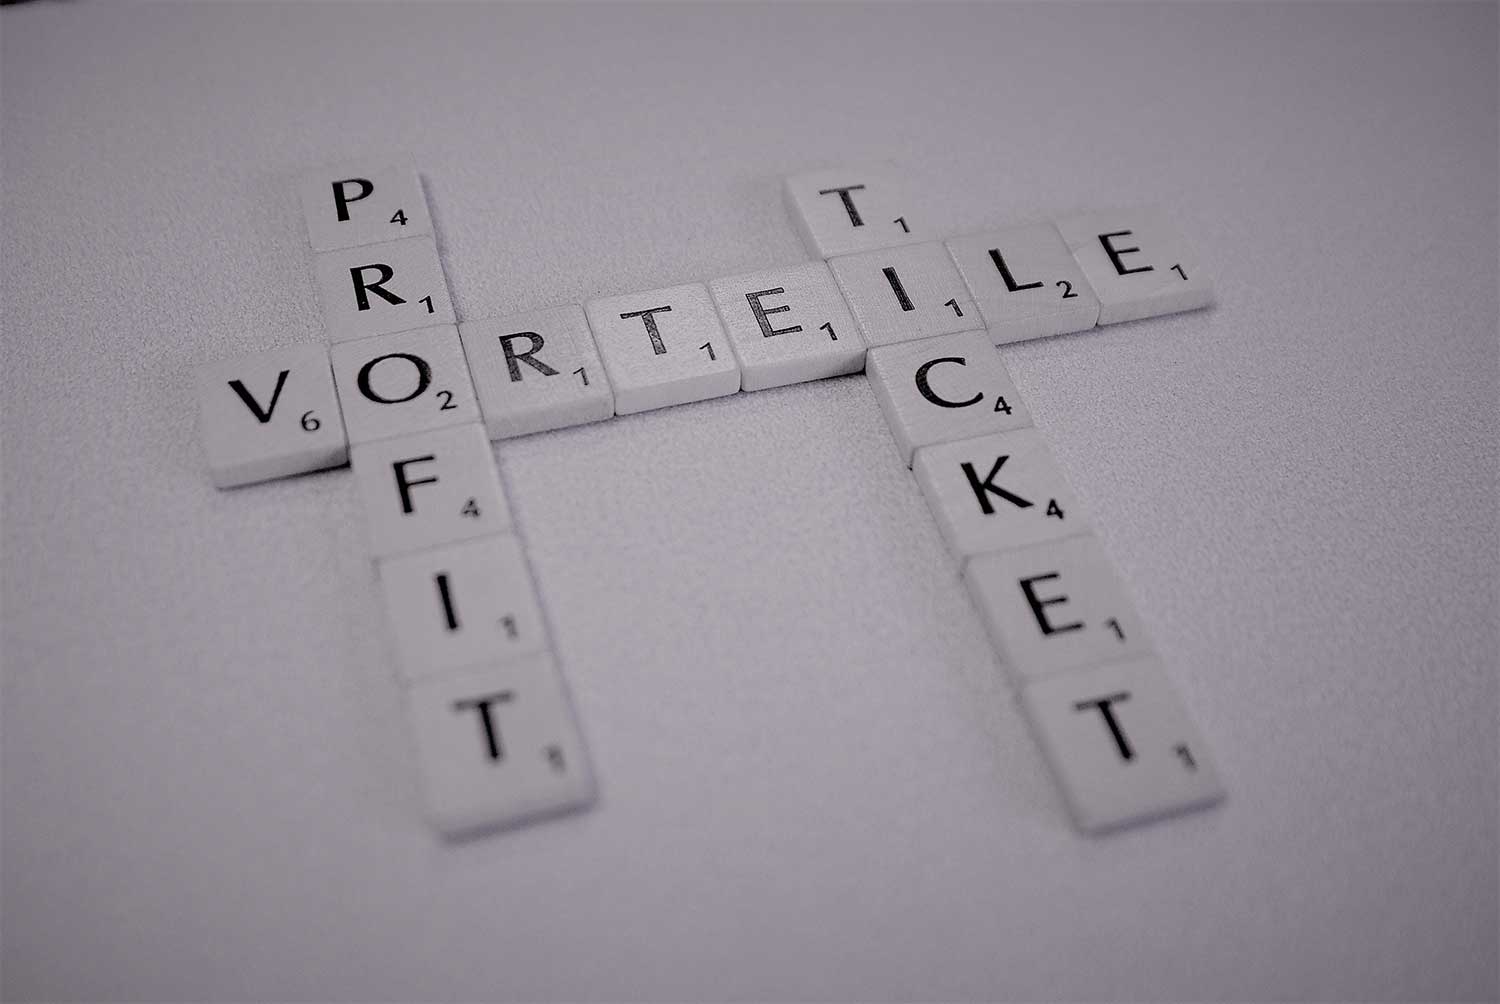 Abbildung von Scrabble Steinen mit den Worten Vorteile Profit und Ticket